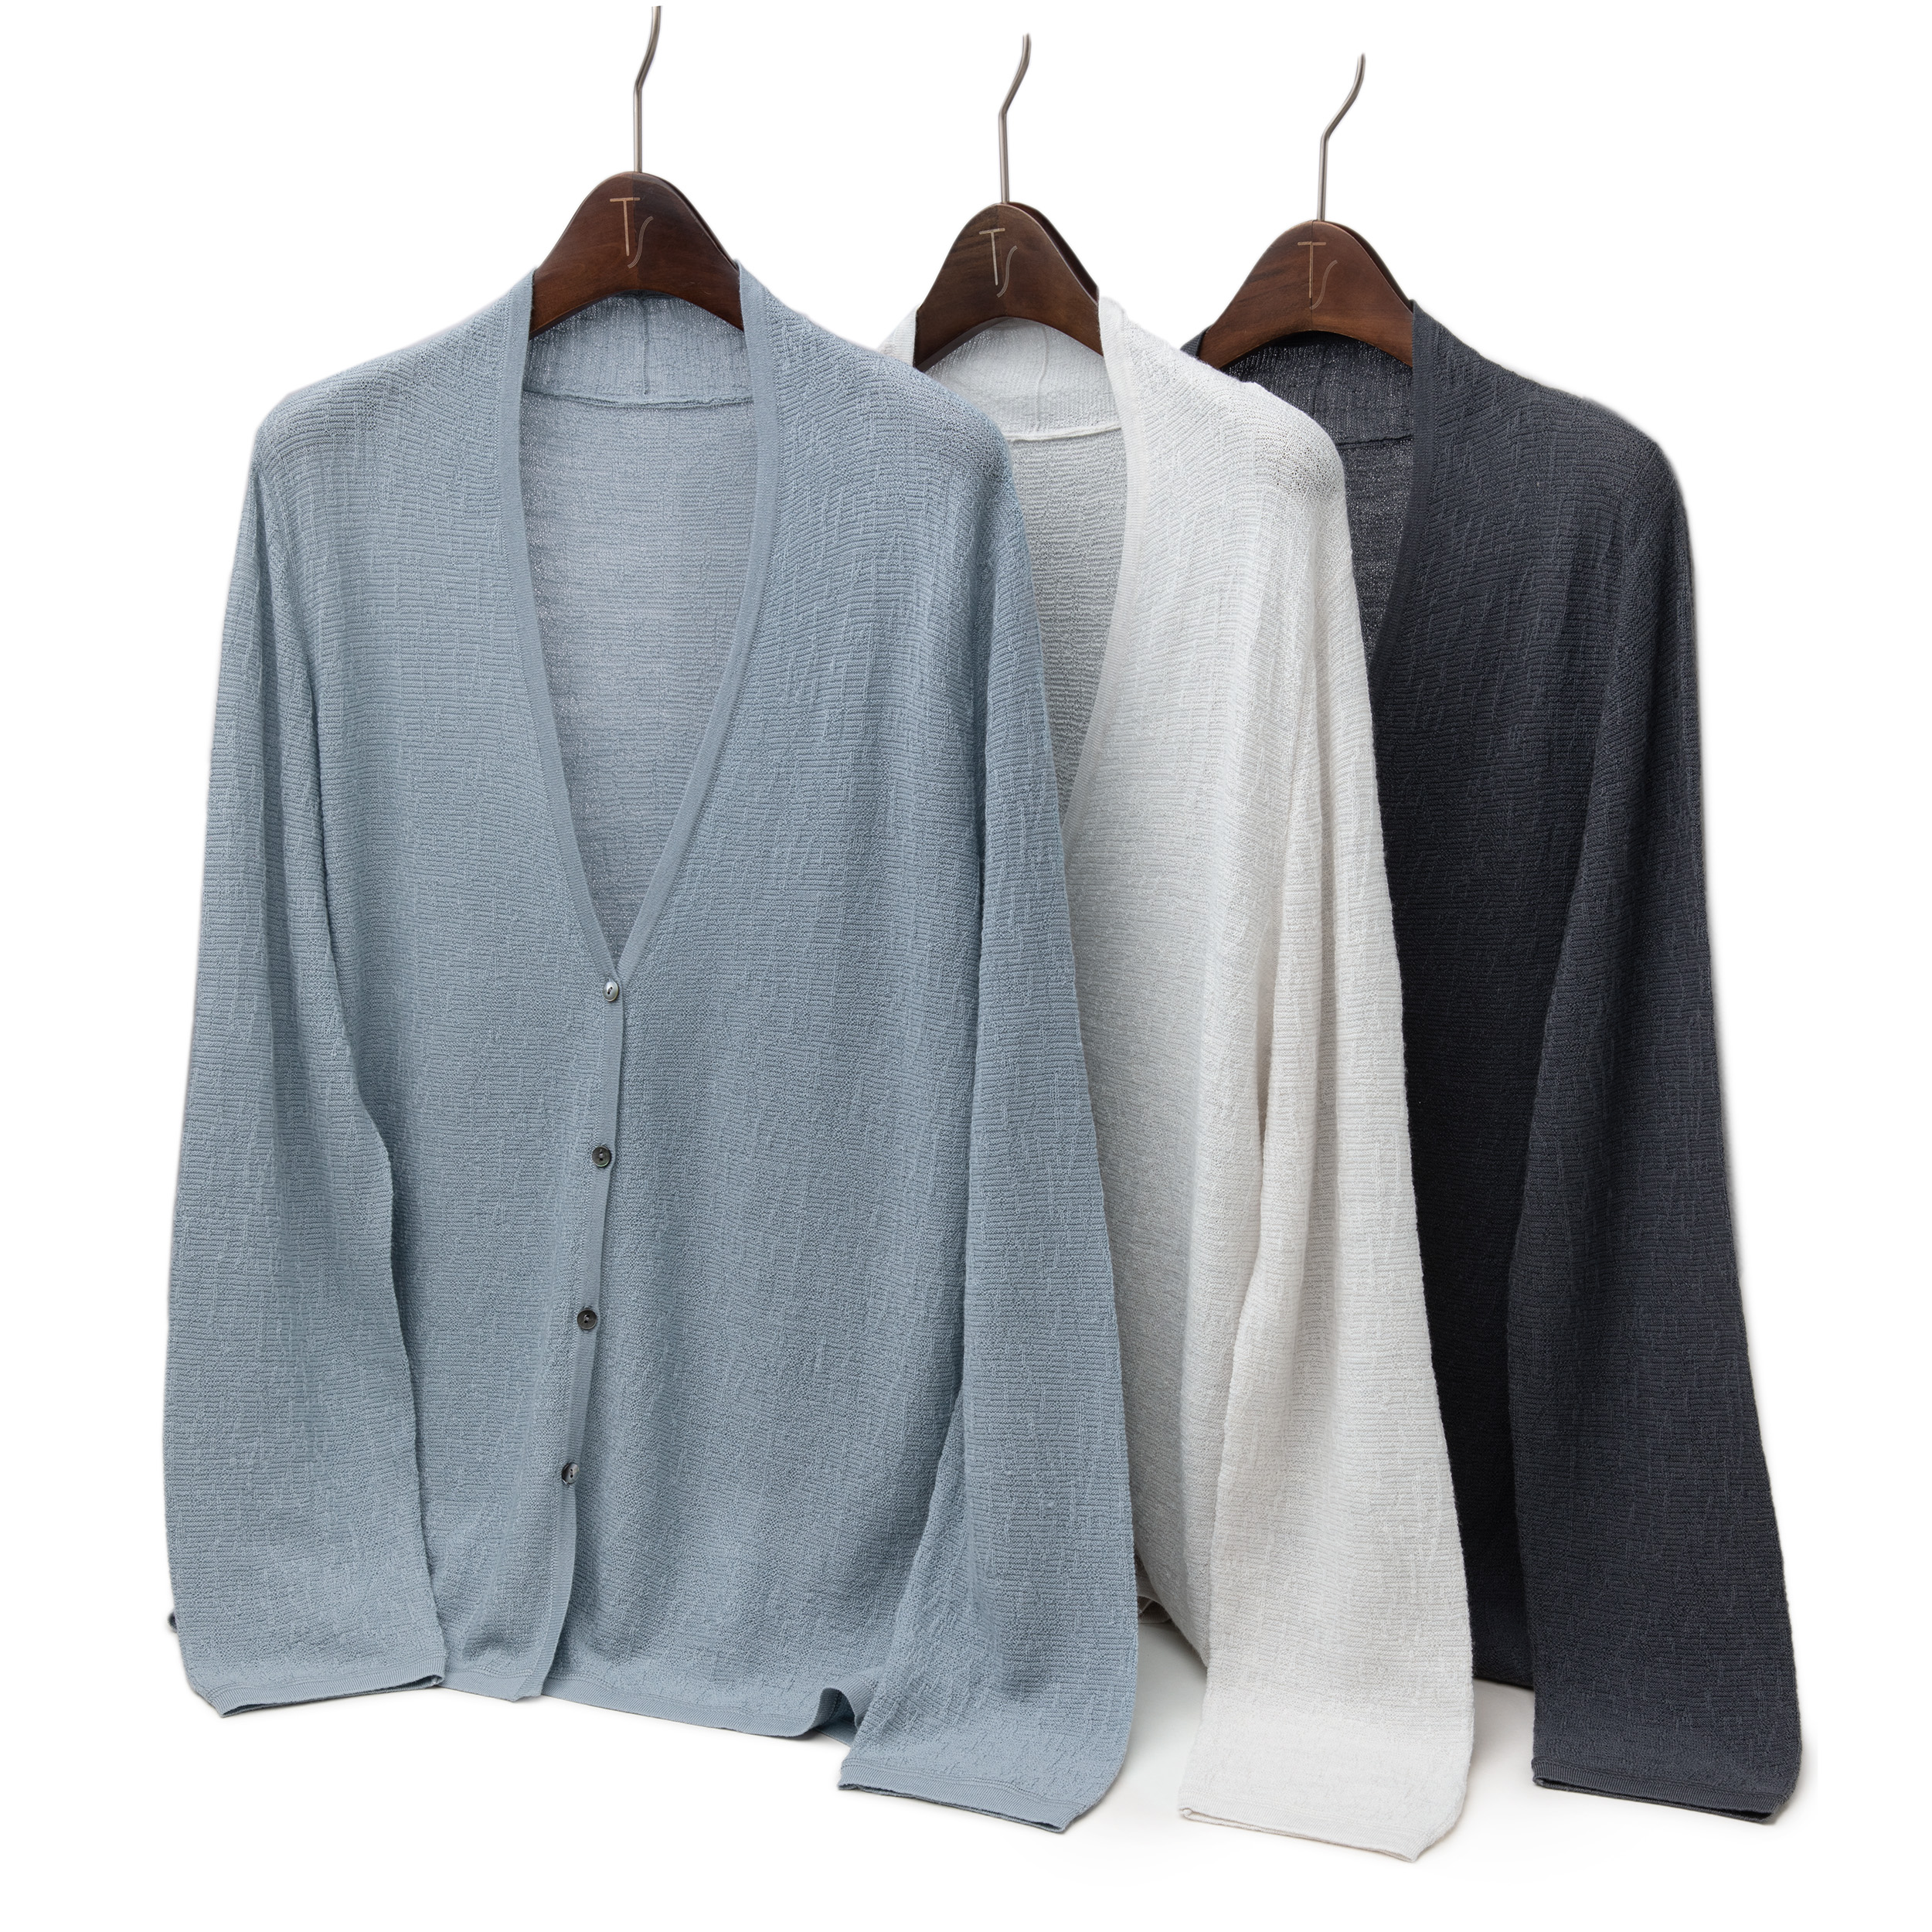 LEMAER乐玛尔 法国客户100%WOOL暗纹&贝壳扣设计轻薄精纺羊毛开衫